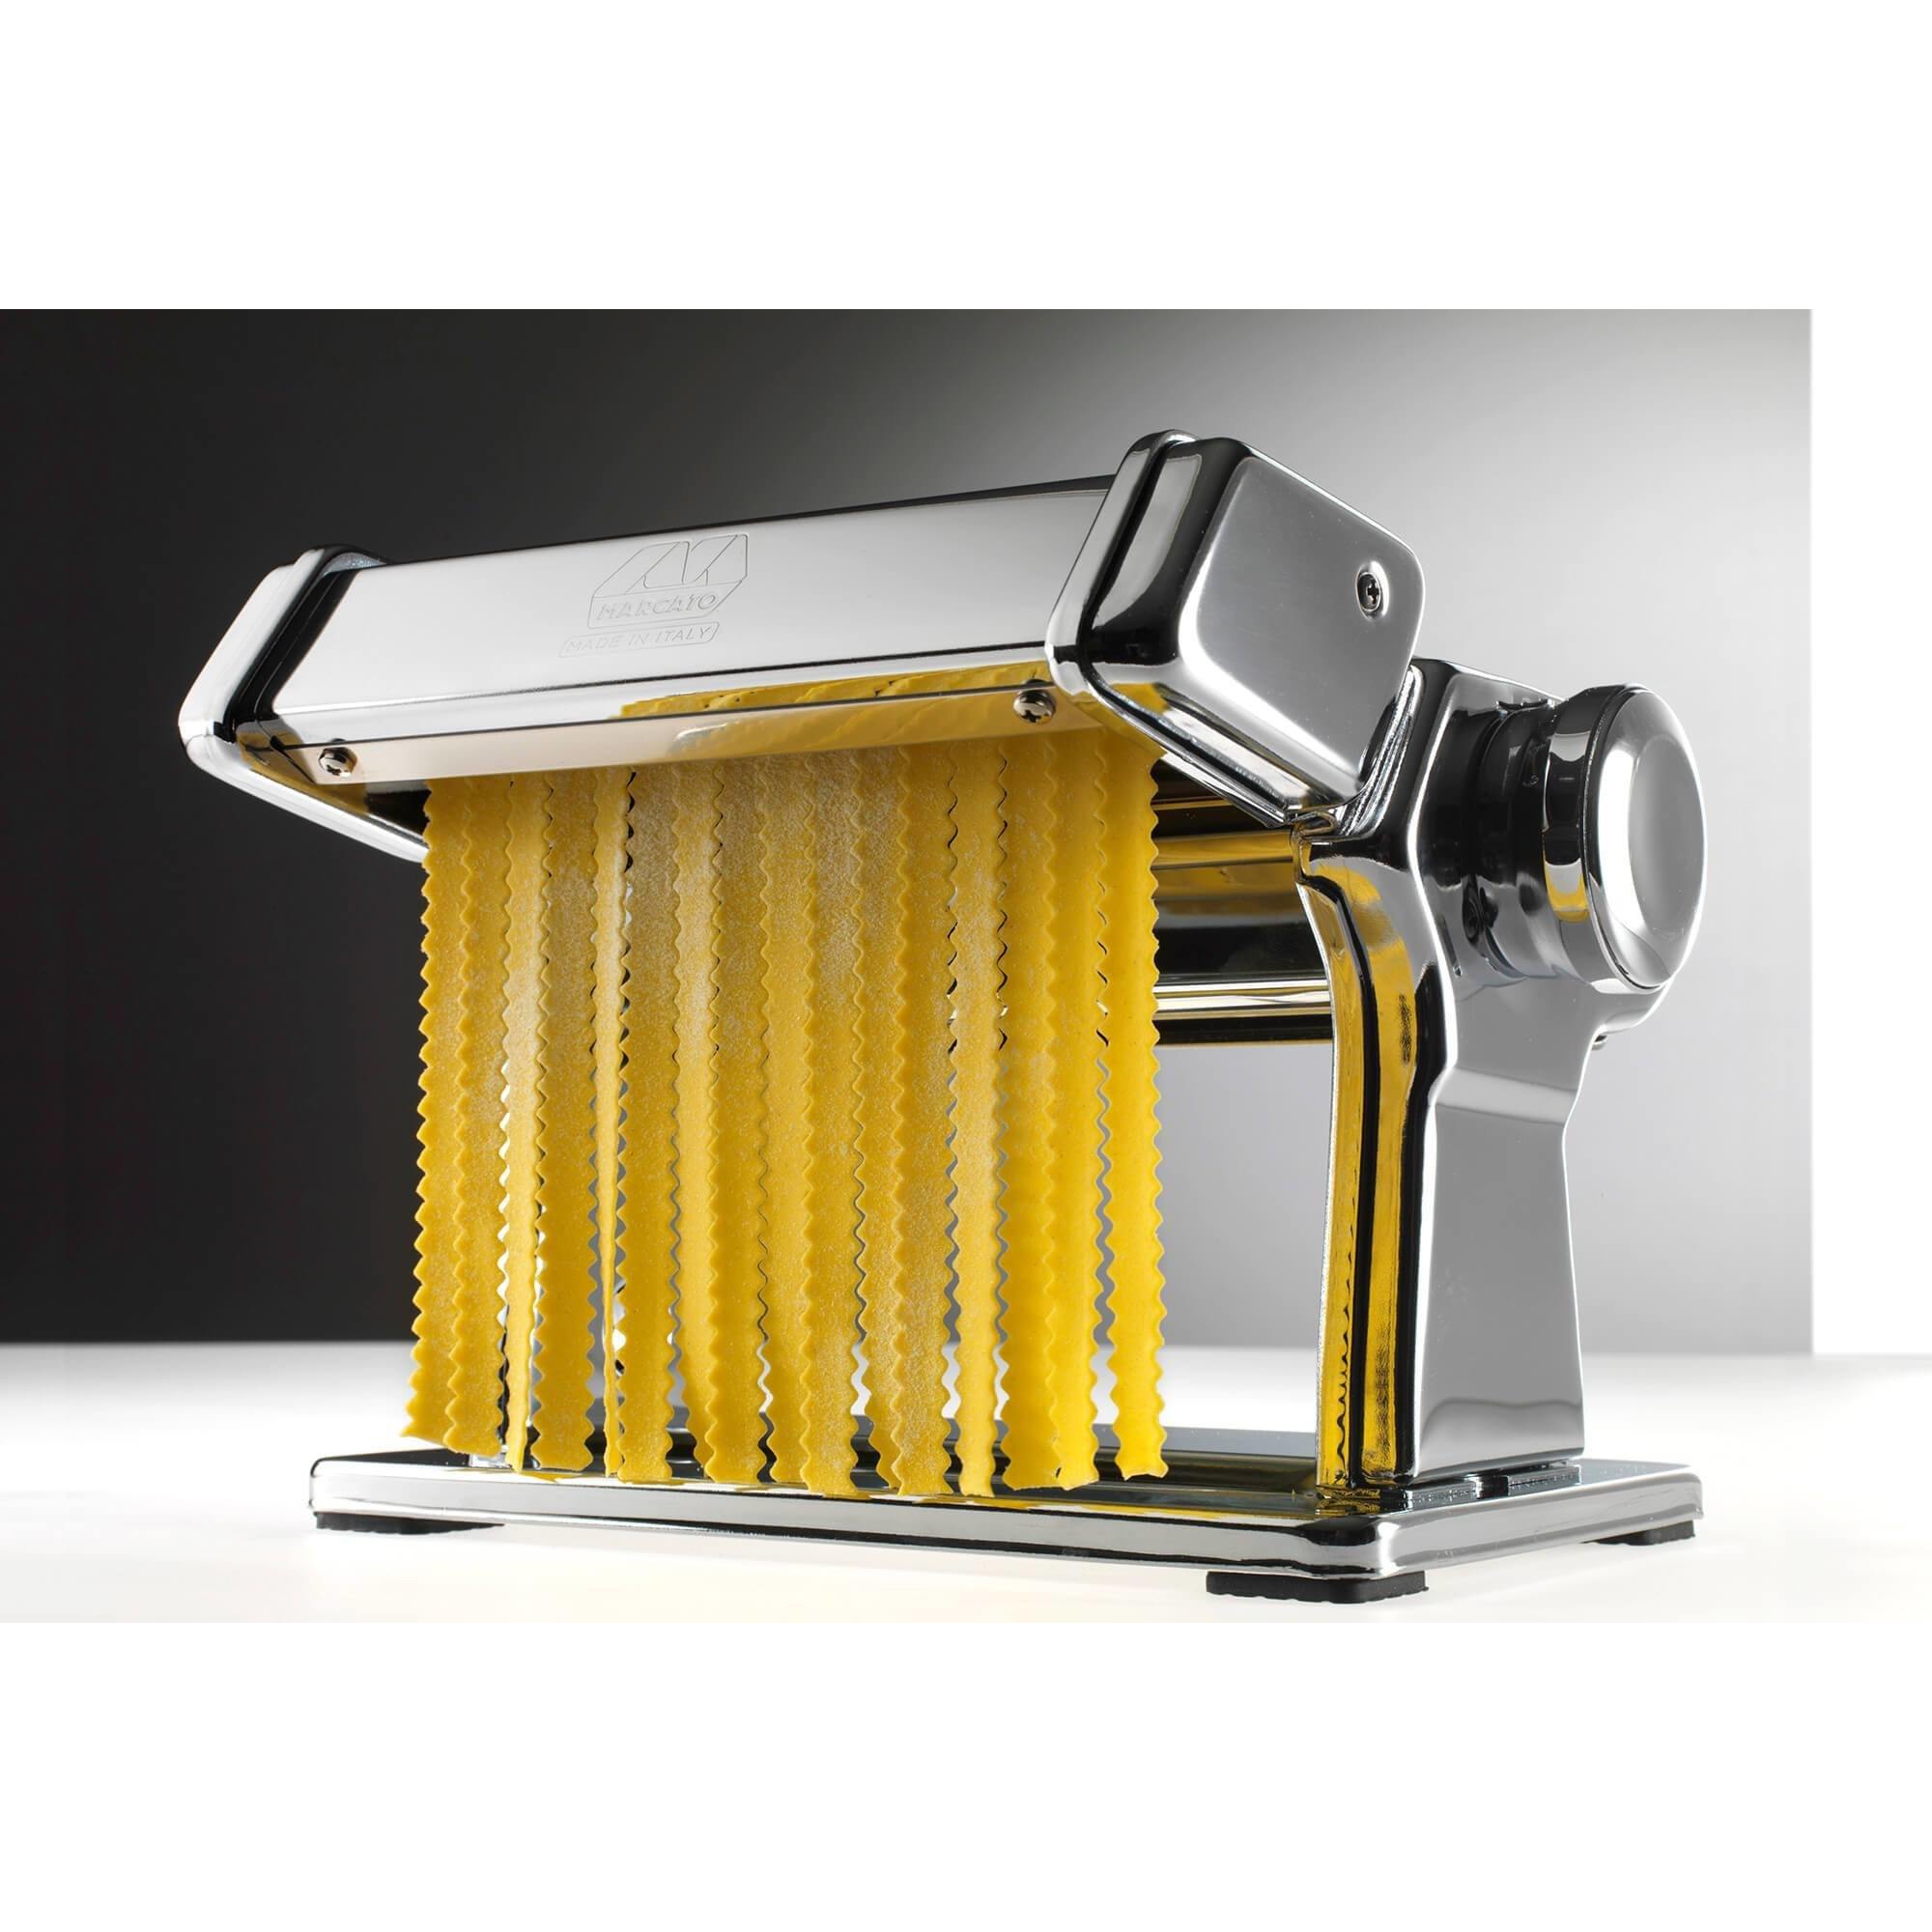 Marcato Mafaldine Attachment (8mm) - Pasta Kitchen (tutto pasta)